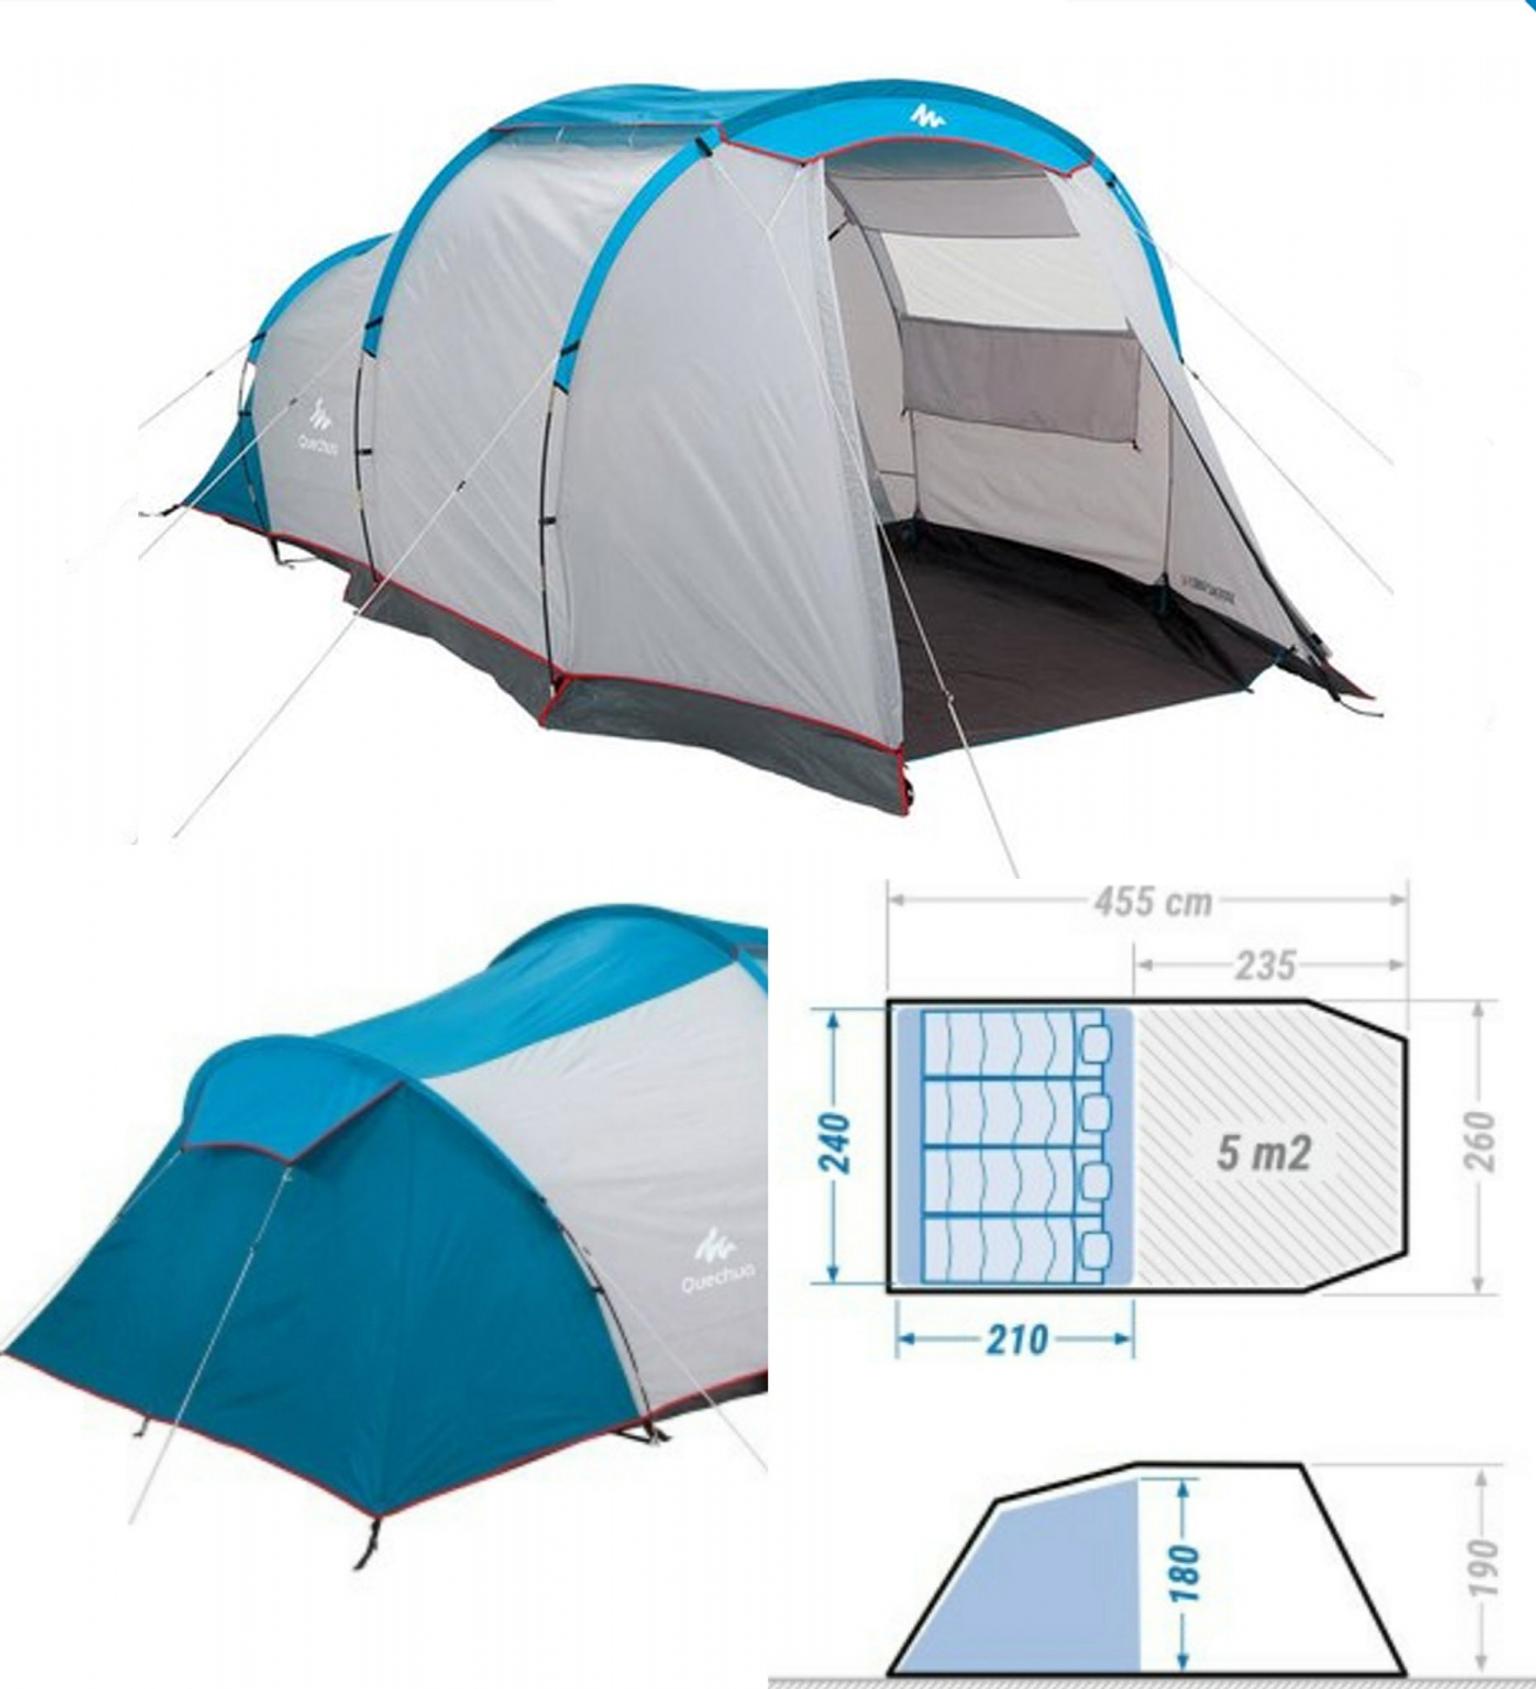 decathlon tents 4 man